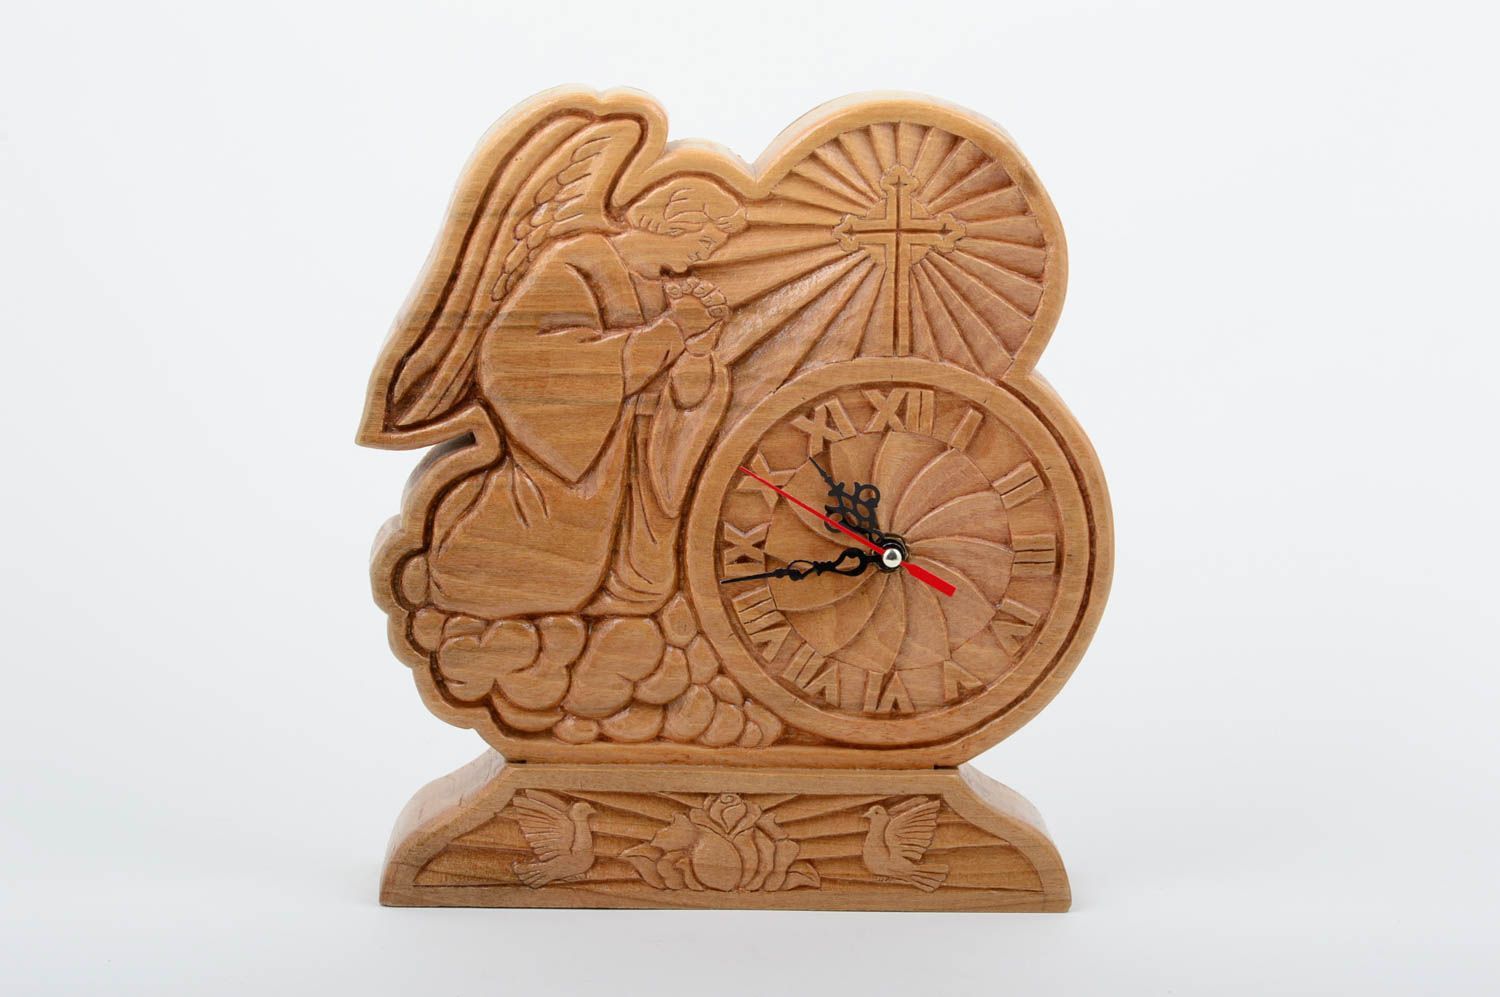 Tisch Uhr Handmade Deko Uhr aus Holz ungewöhnliche Uhr Engel geschnitzt schön foto 1